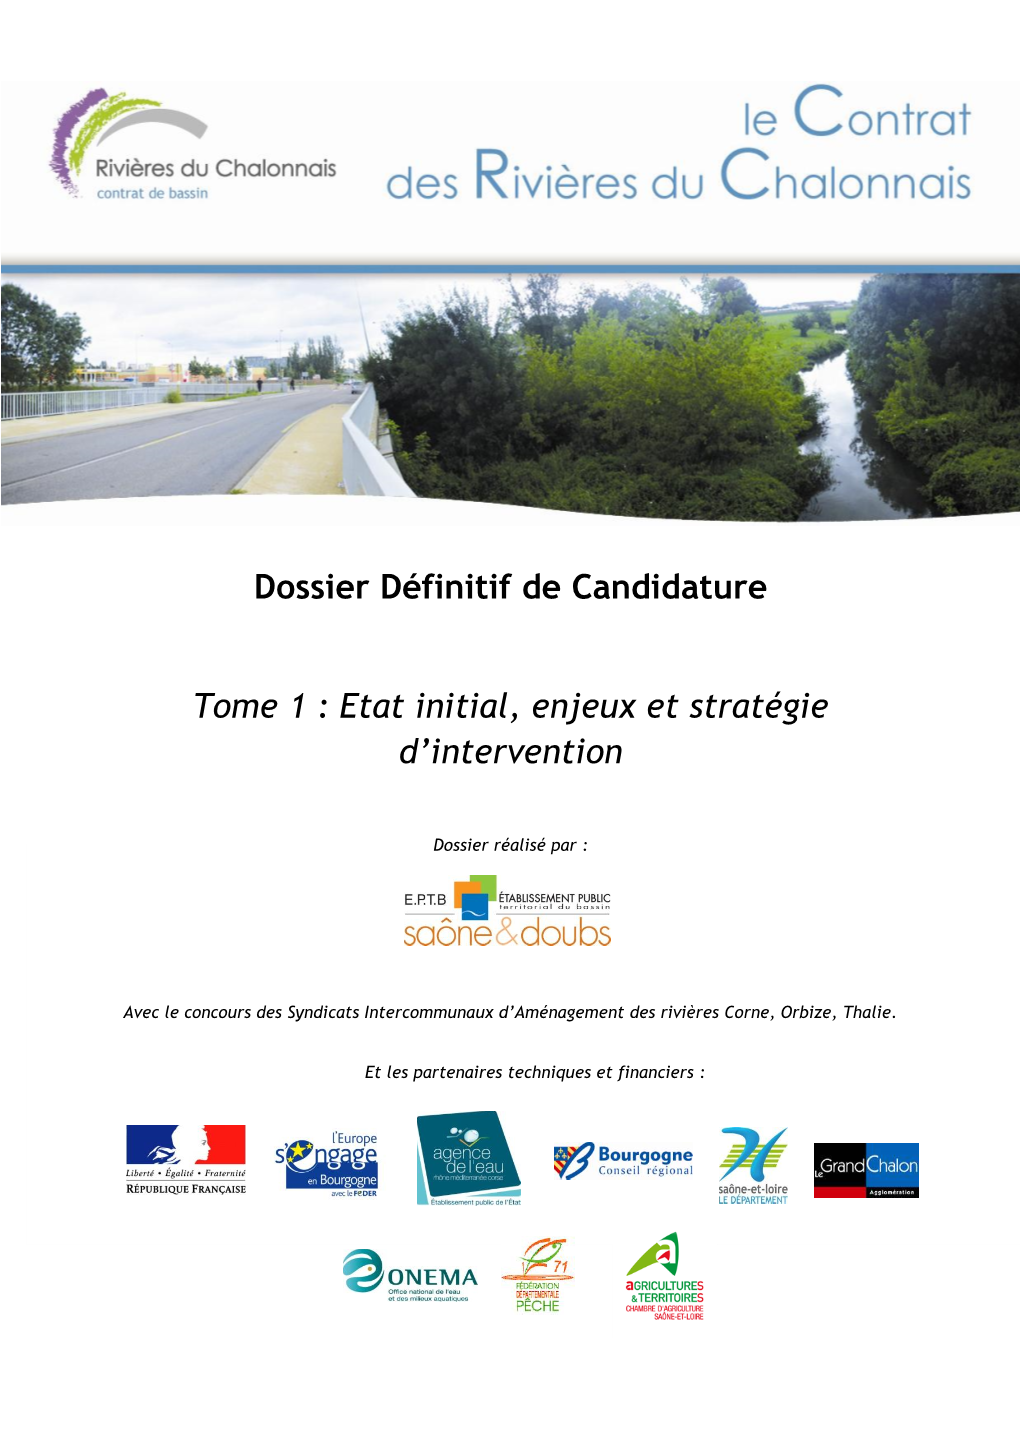 Dossier Définitif De Candidature Tome 1 : Etat Initial, Enjeux Et Stratégie D